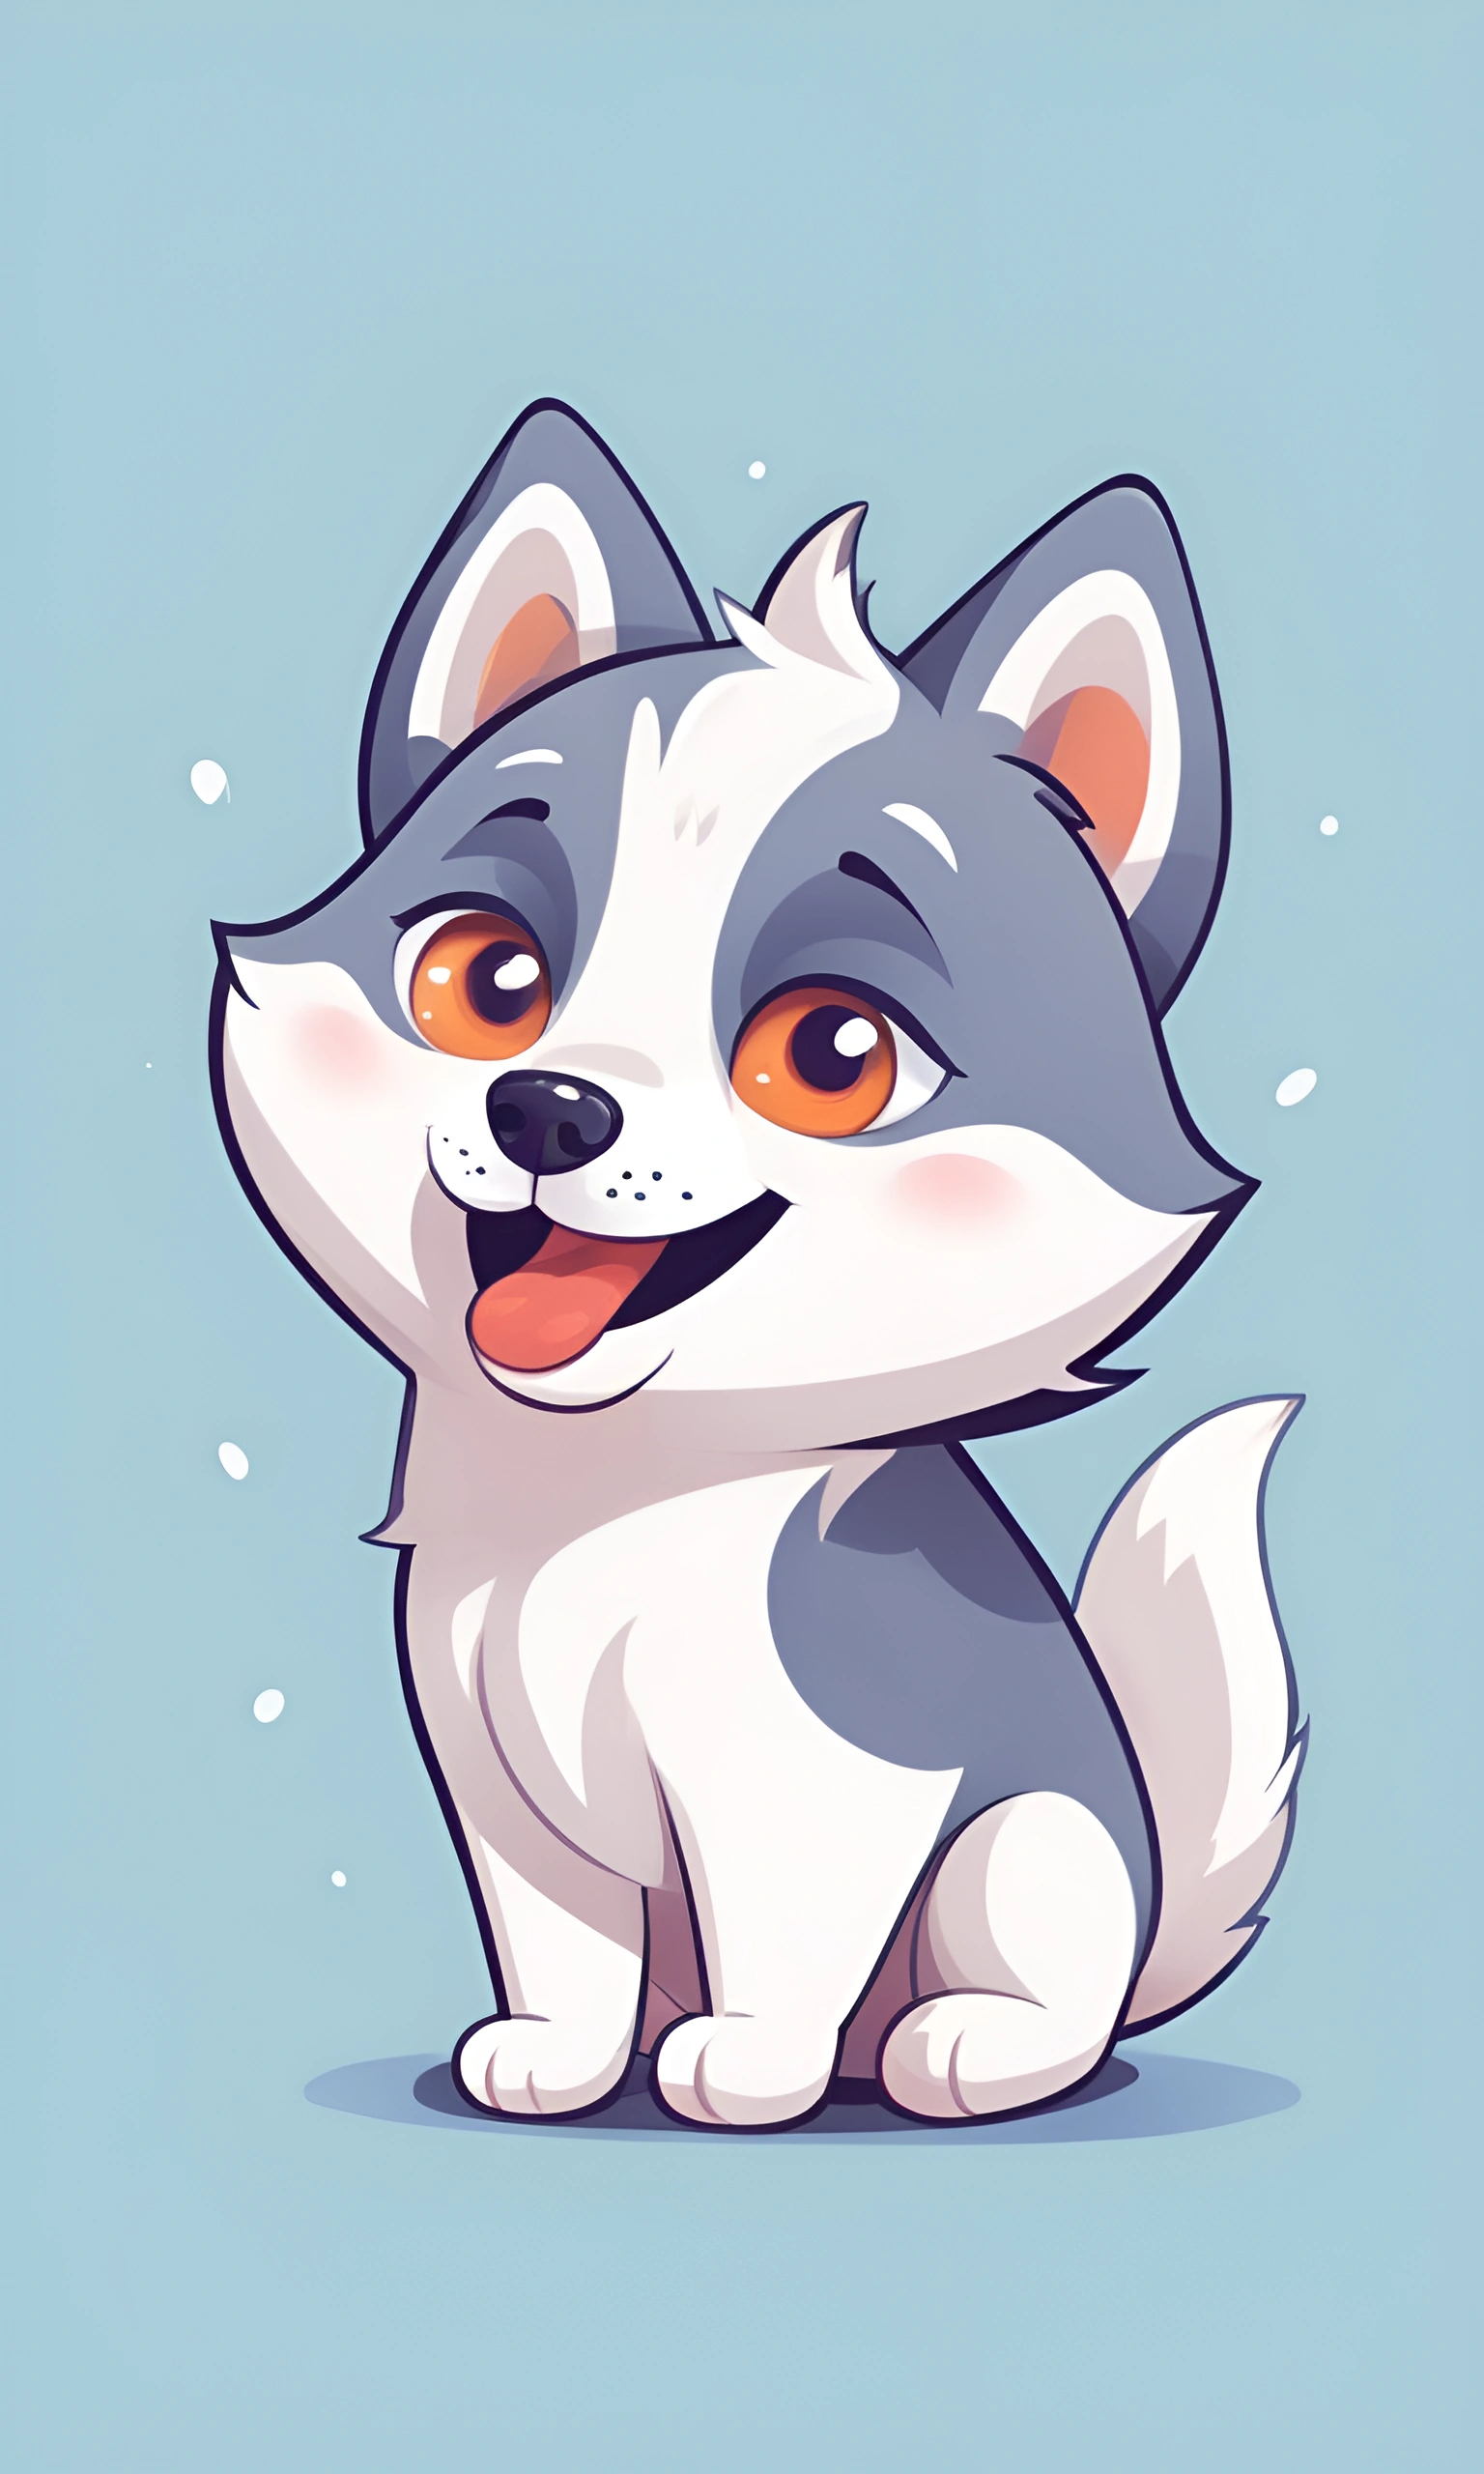 cartoon husky dog with orange eyes sitting on a blue surface